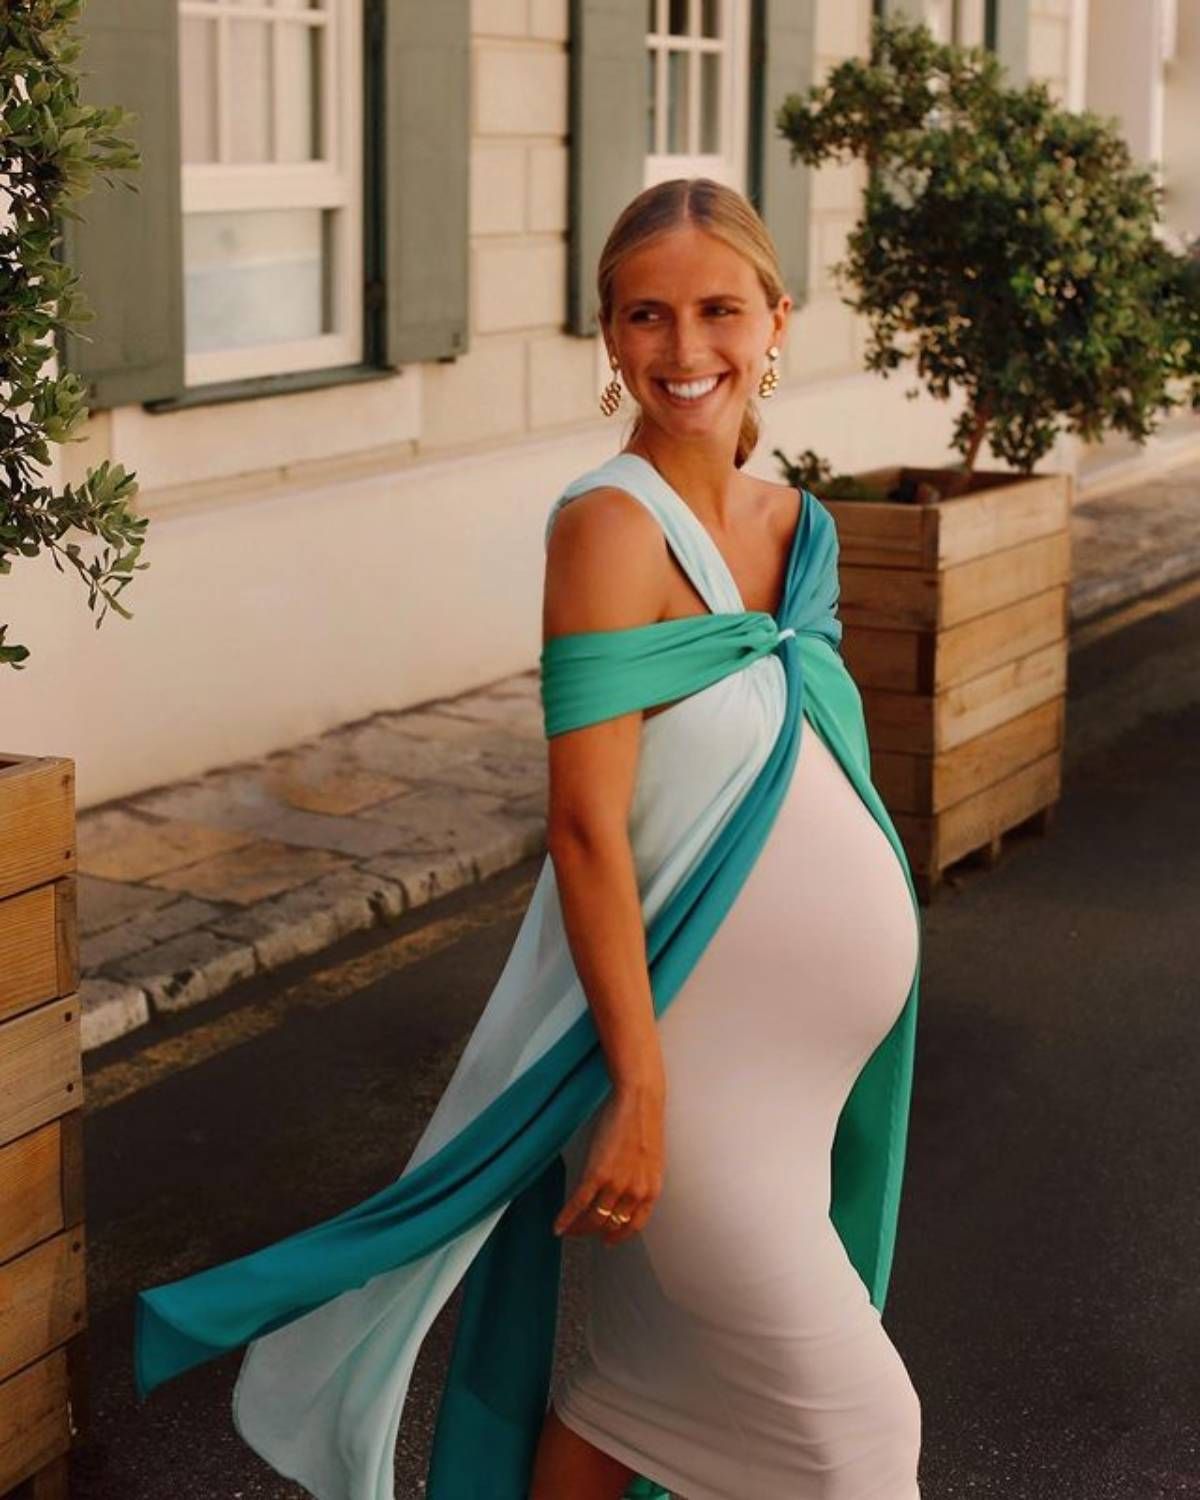 El de Lucía Bárcena, la perfecta invitada embarazada, para encontrar los mejores vestidos premamá de gala - Woman